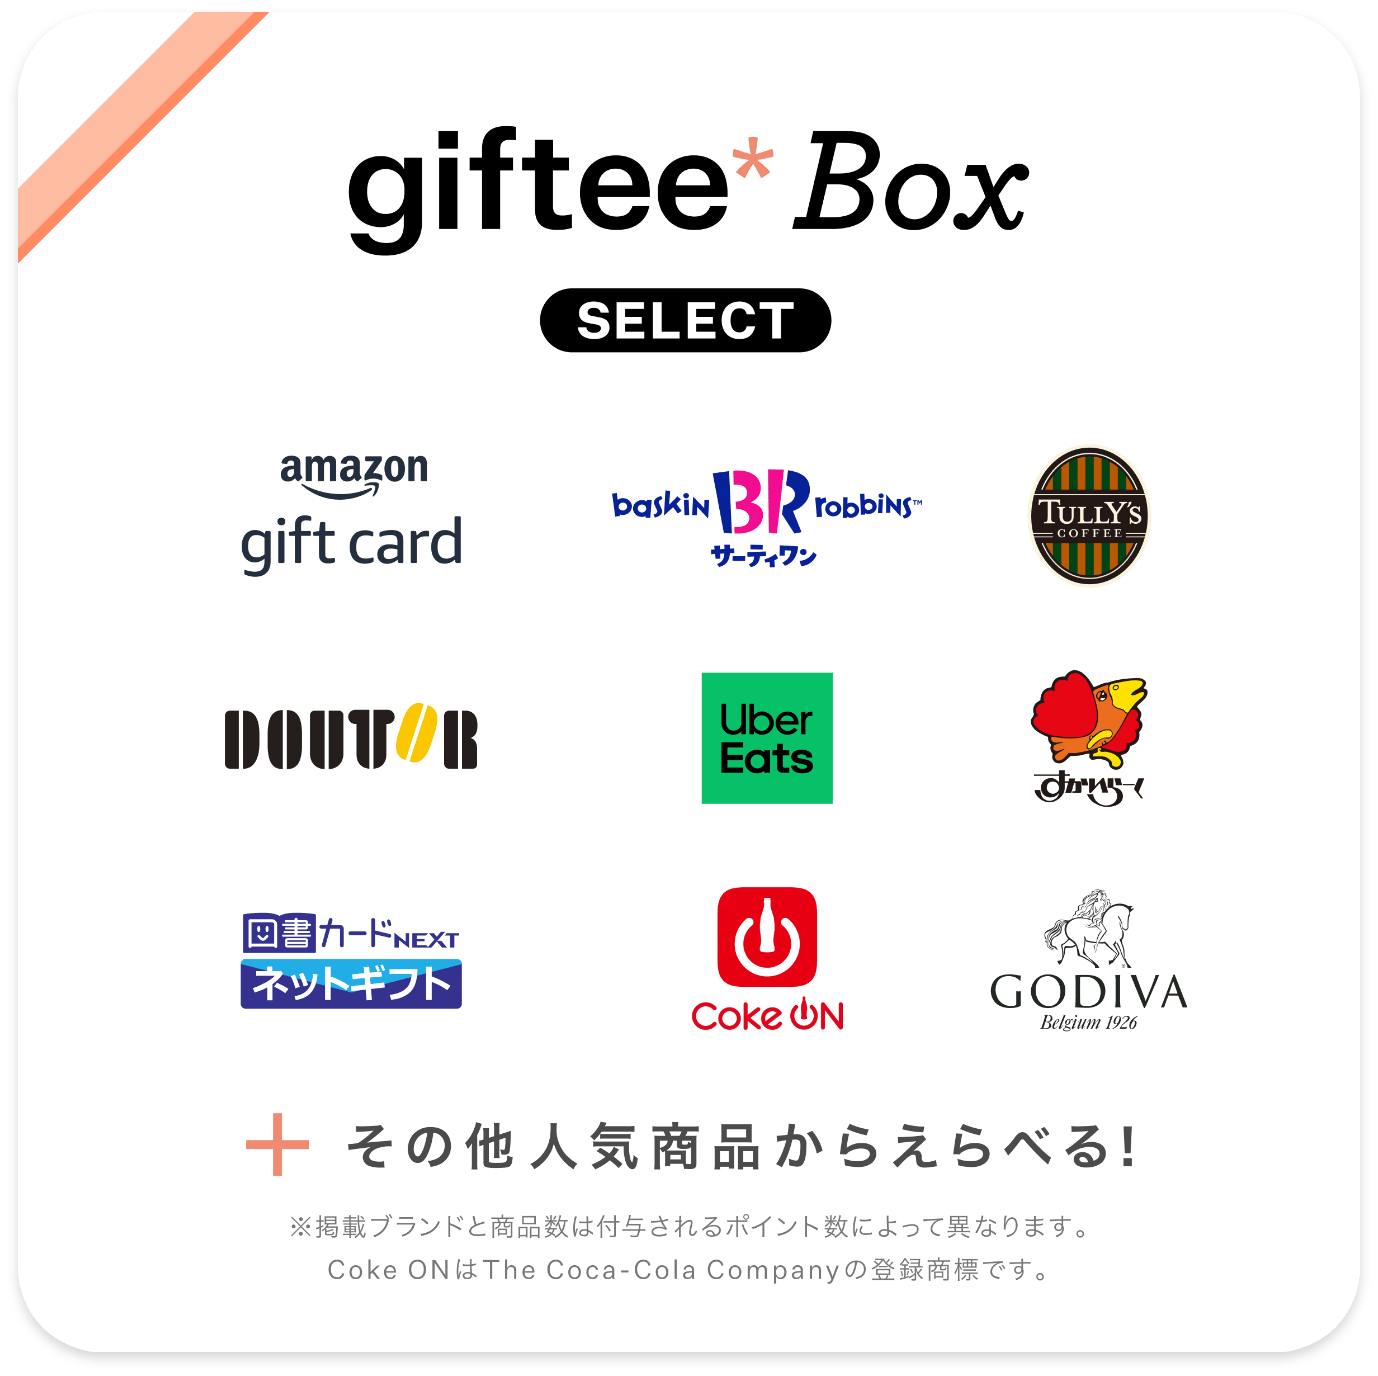 giftee*box Select